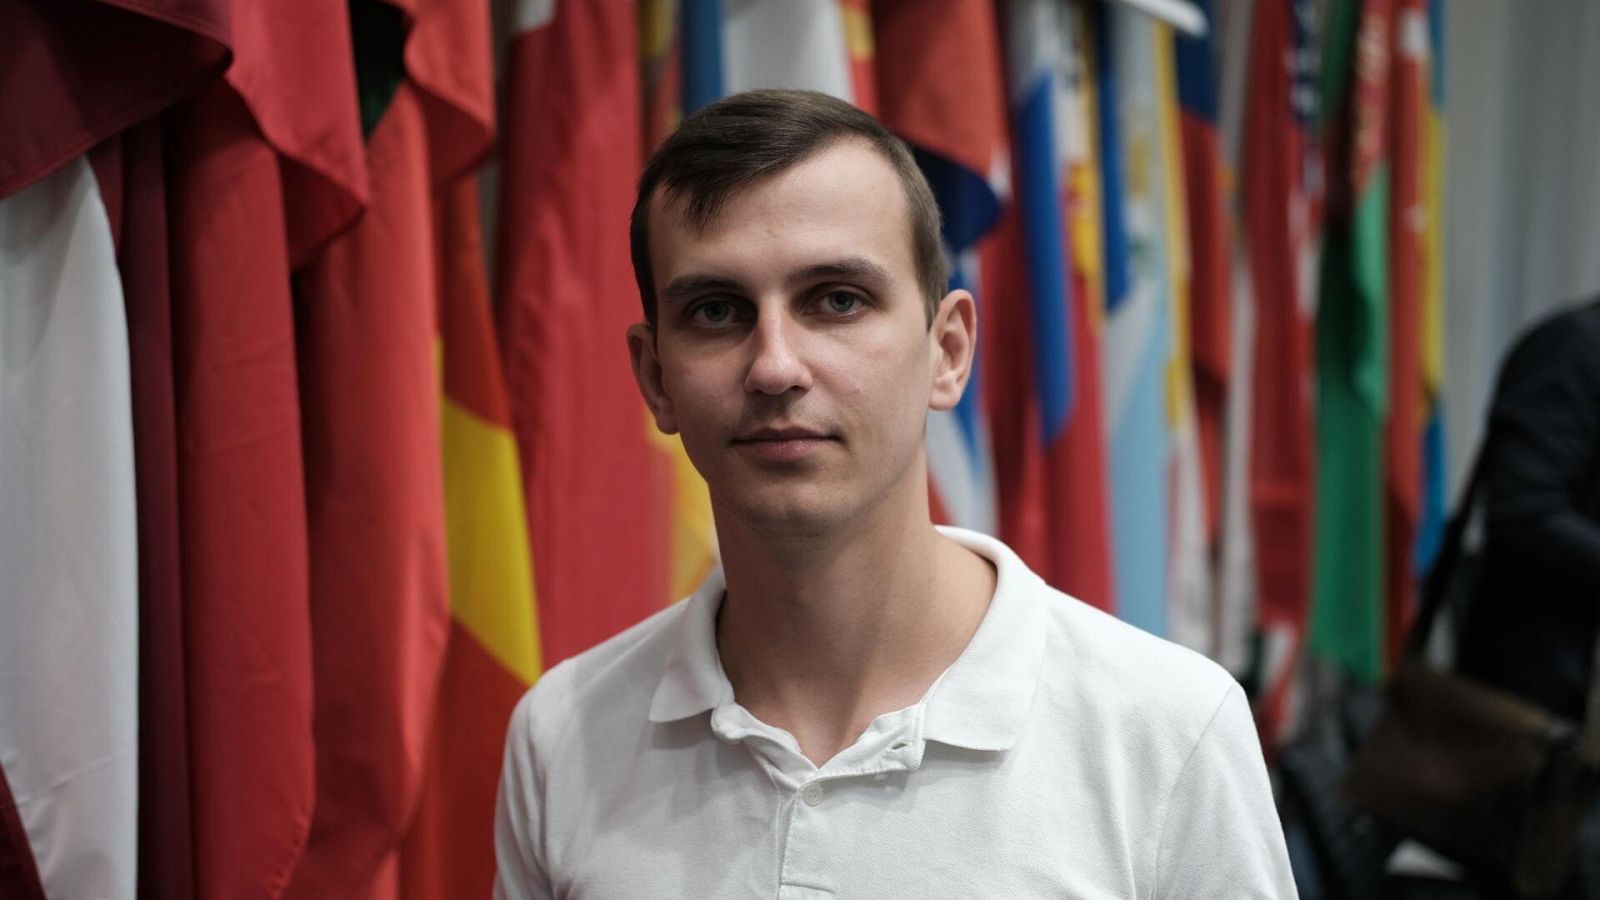 Ihor Talalay, un ucraniano de 25 años, sufrió continuas palizas hambre e interrogatorios en un "campo de filtración" ruso